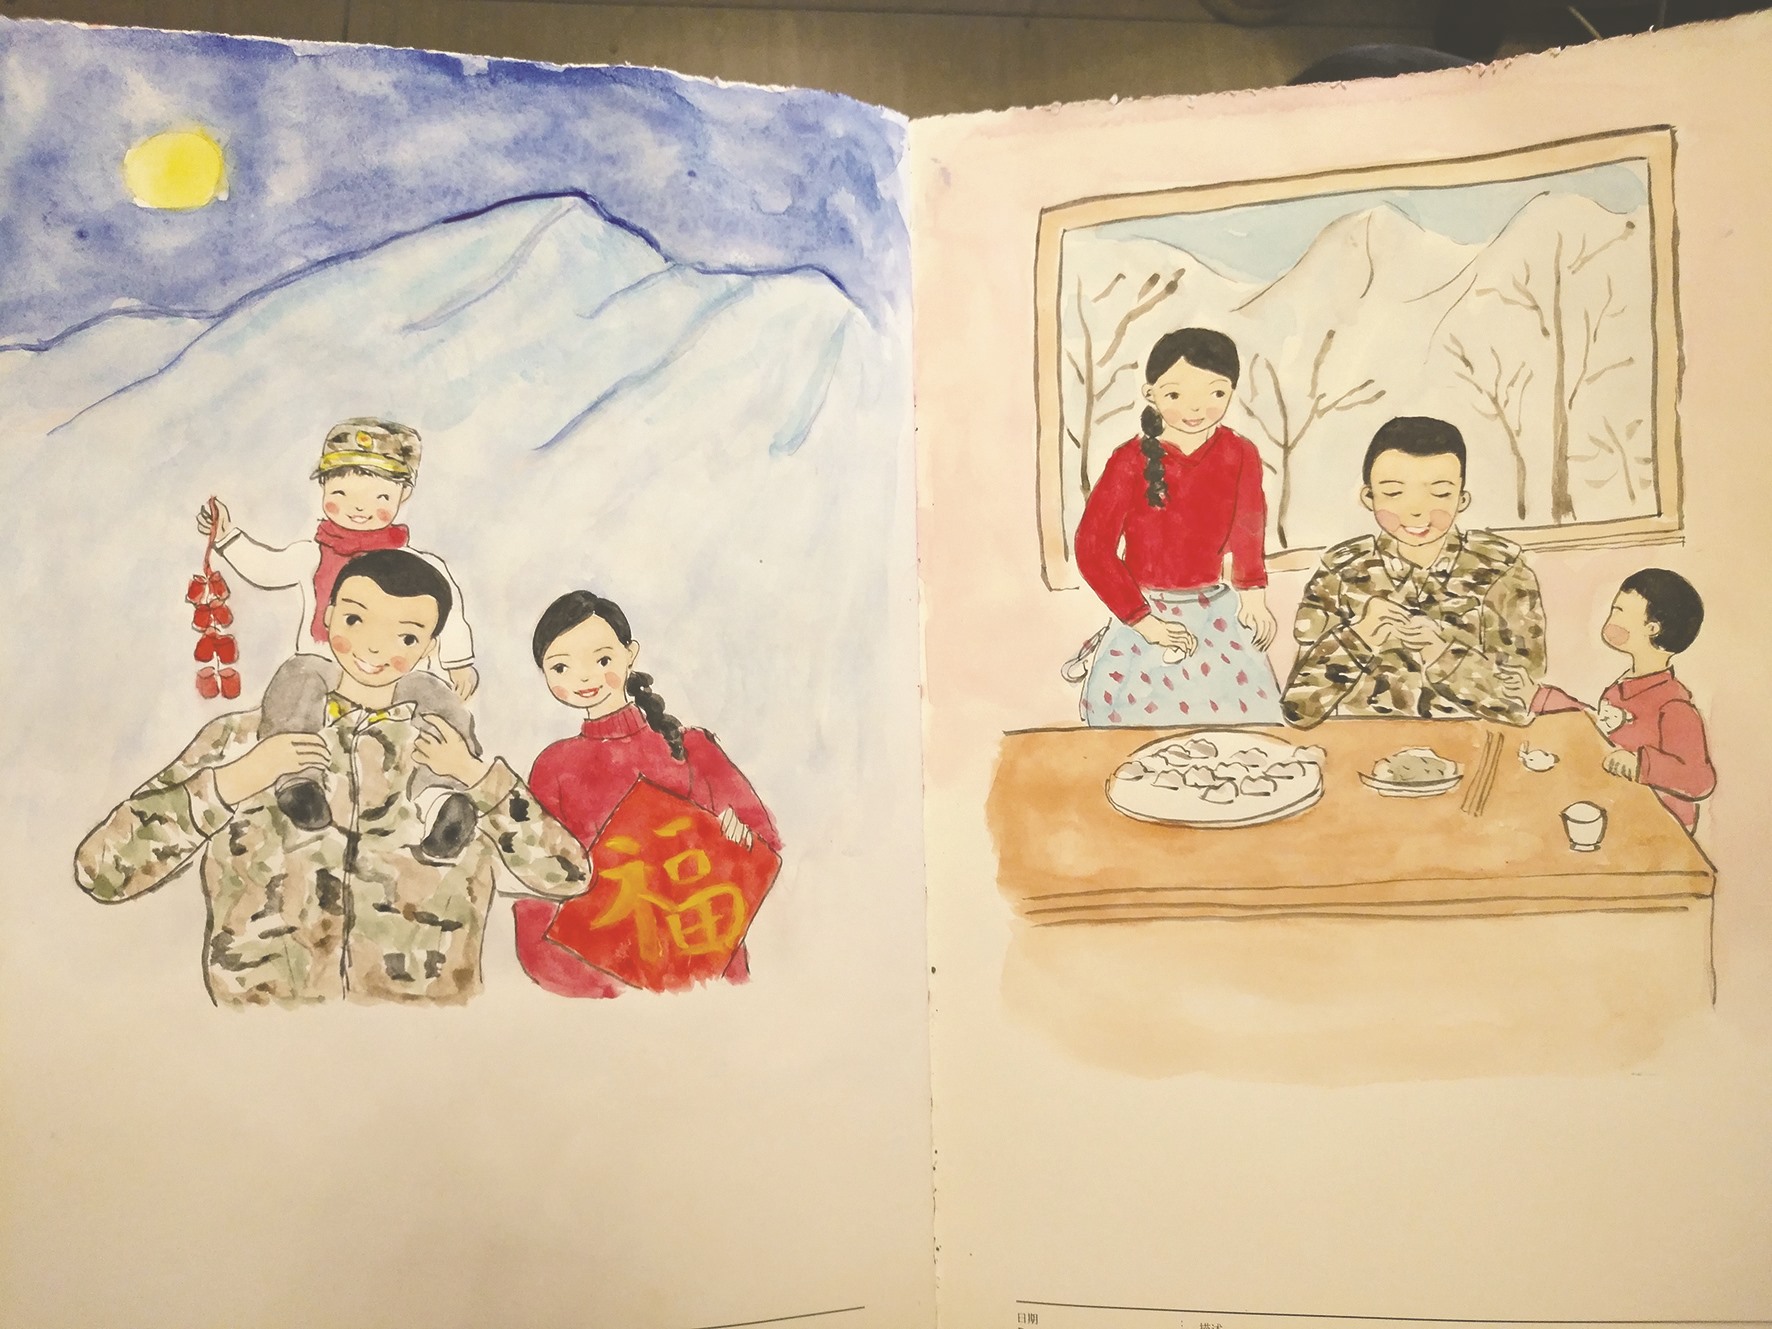 小学教师,军嫂刘媛莉把一家人画进画里,带着"团圆画"奔赴雪域高原拉萨